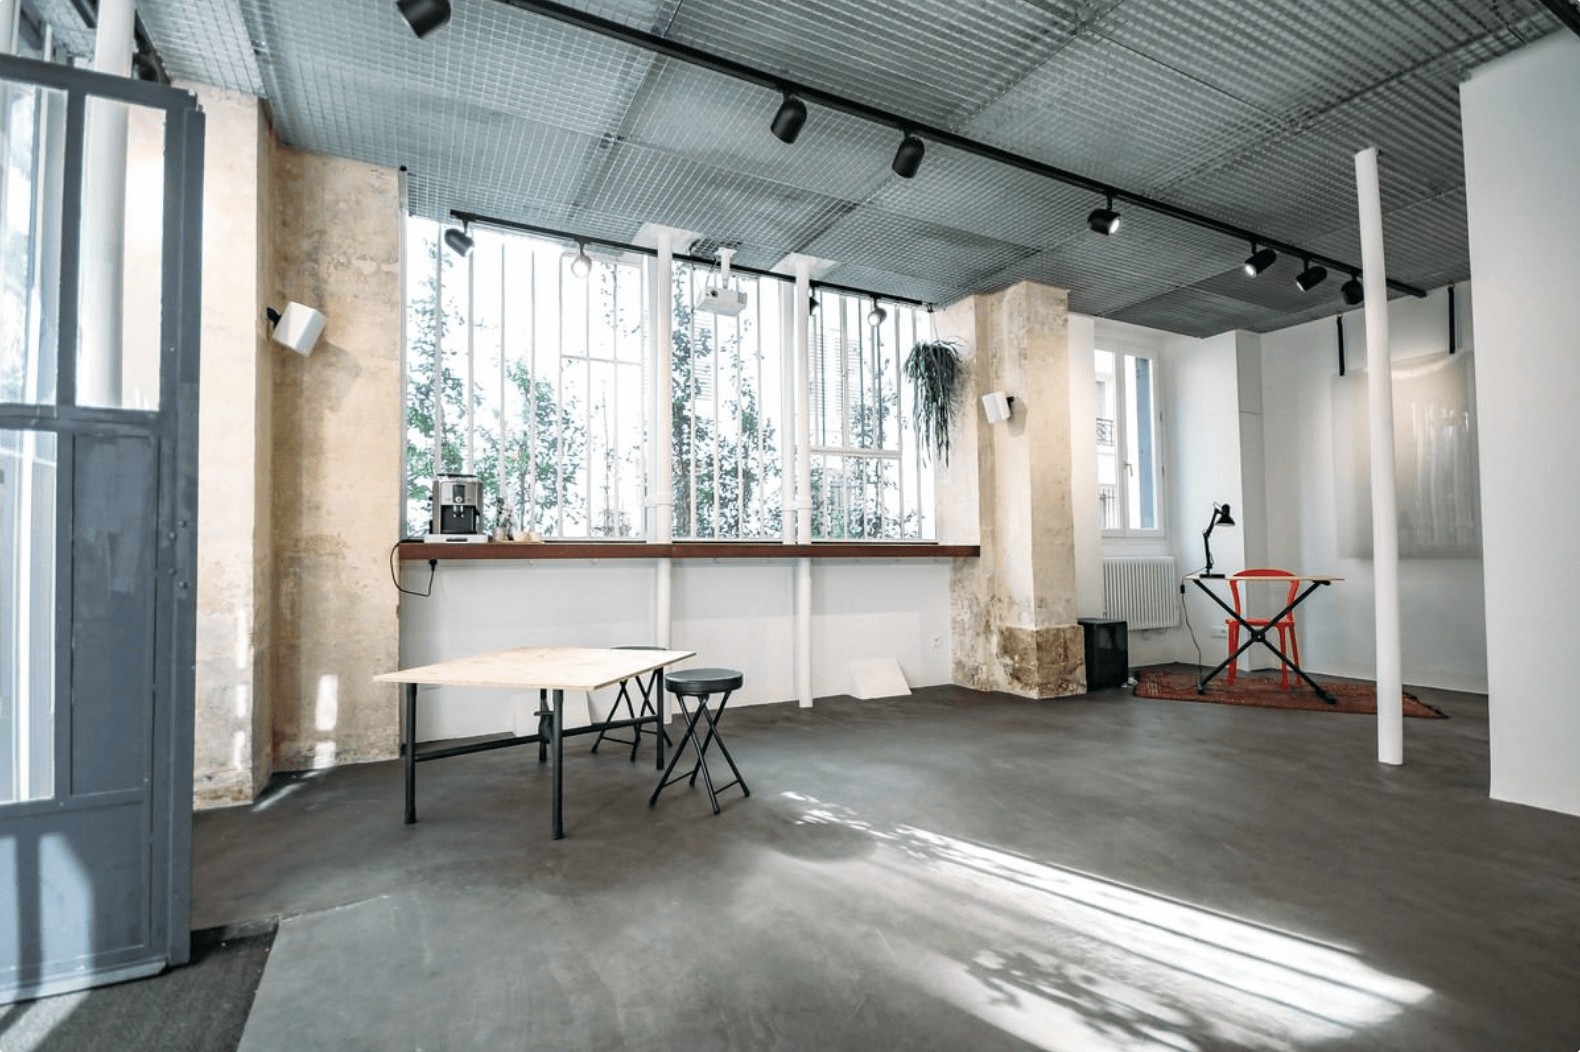 Galerie intimiste et lumineuse avec du béton ciré au sol et de la taule au plafond pour organiser un événement atypique